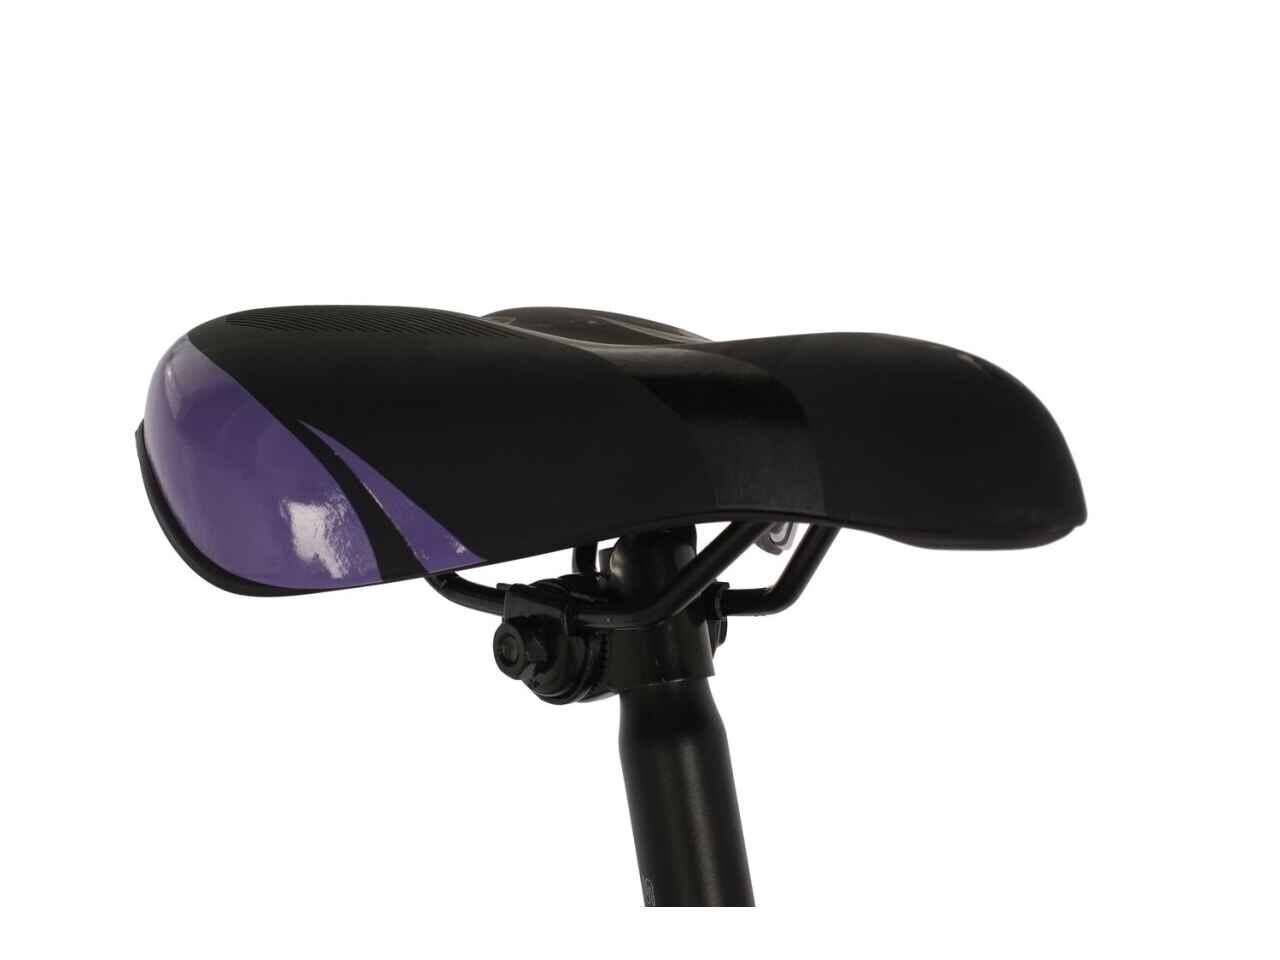 Велосипед Stinger Laguna STD 27.5 (17, фиолетовый, 2022)